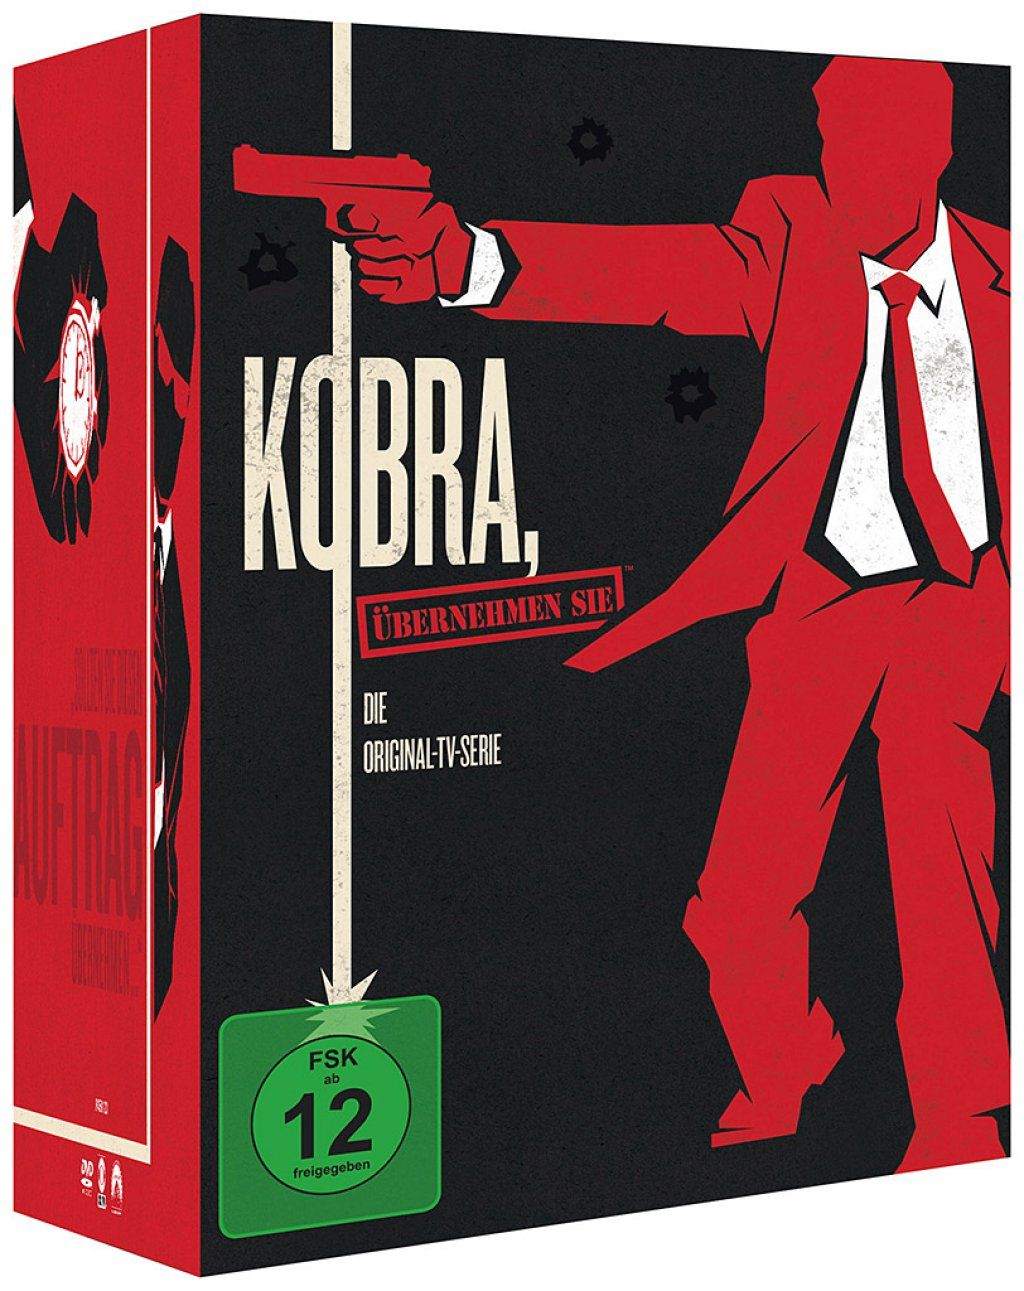 Kobra, übernehmen Sie - Die komplete Serie (Neuauflage) (46 Discs)